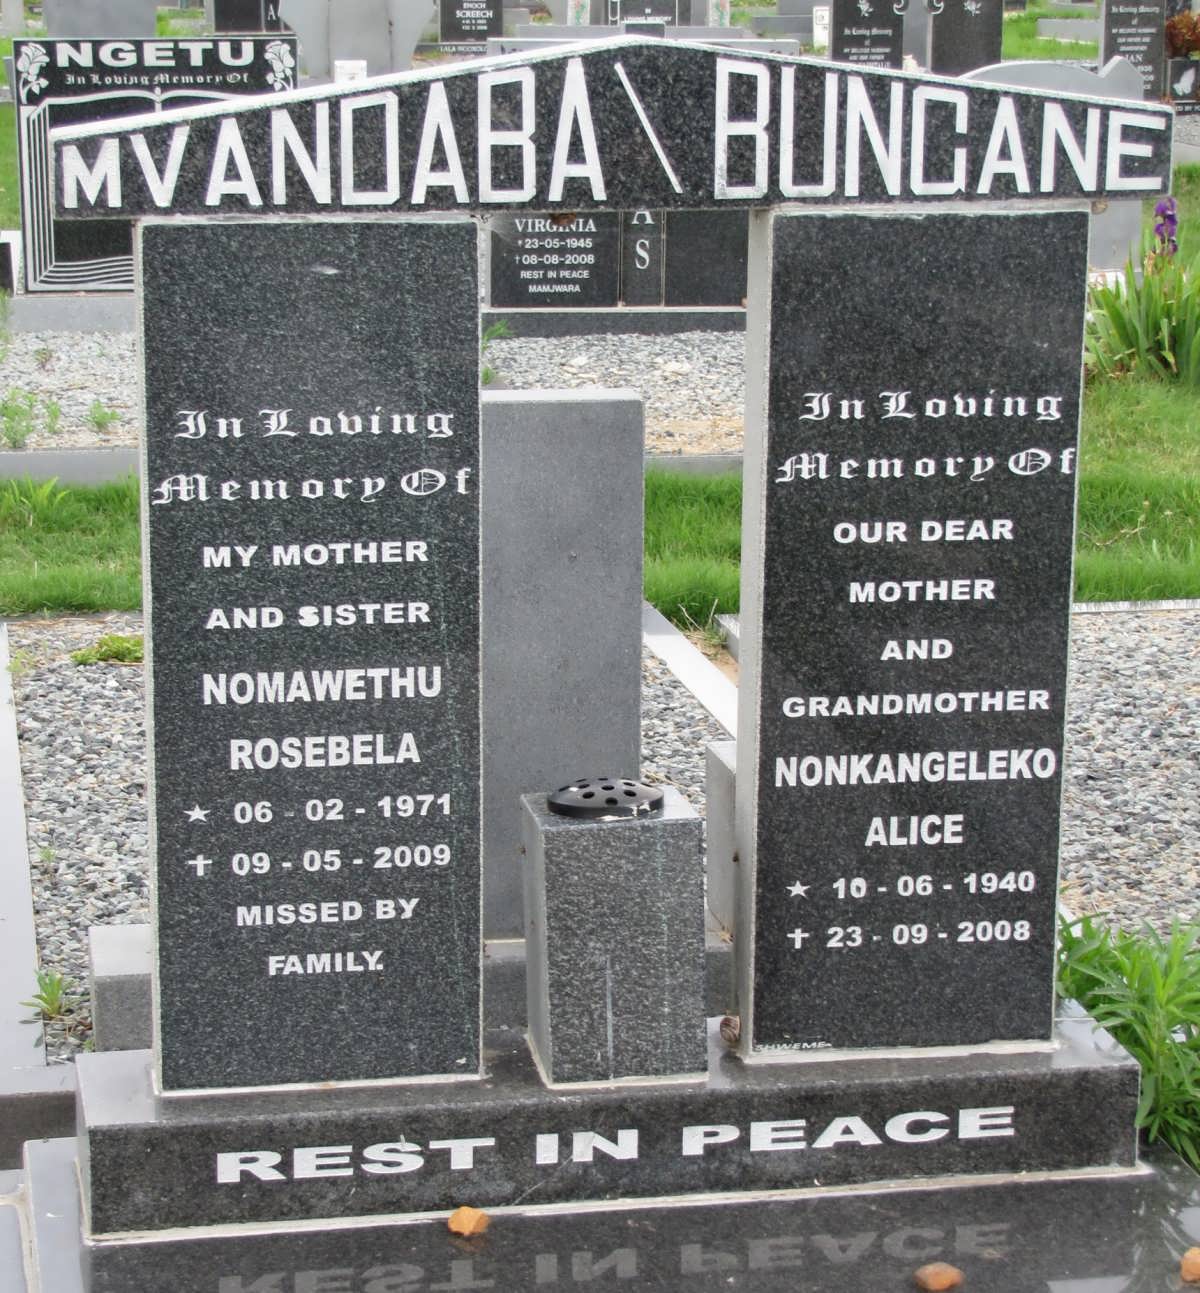 MVANDABA Nomawethu Rosebela 1971-2009 :: BUNGANE Nonkangeleko Alice 1940-2008